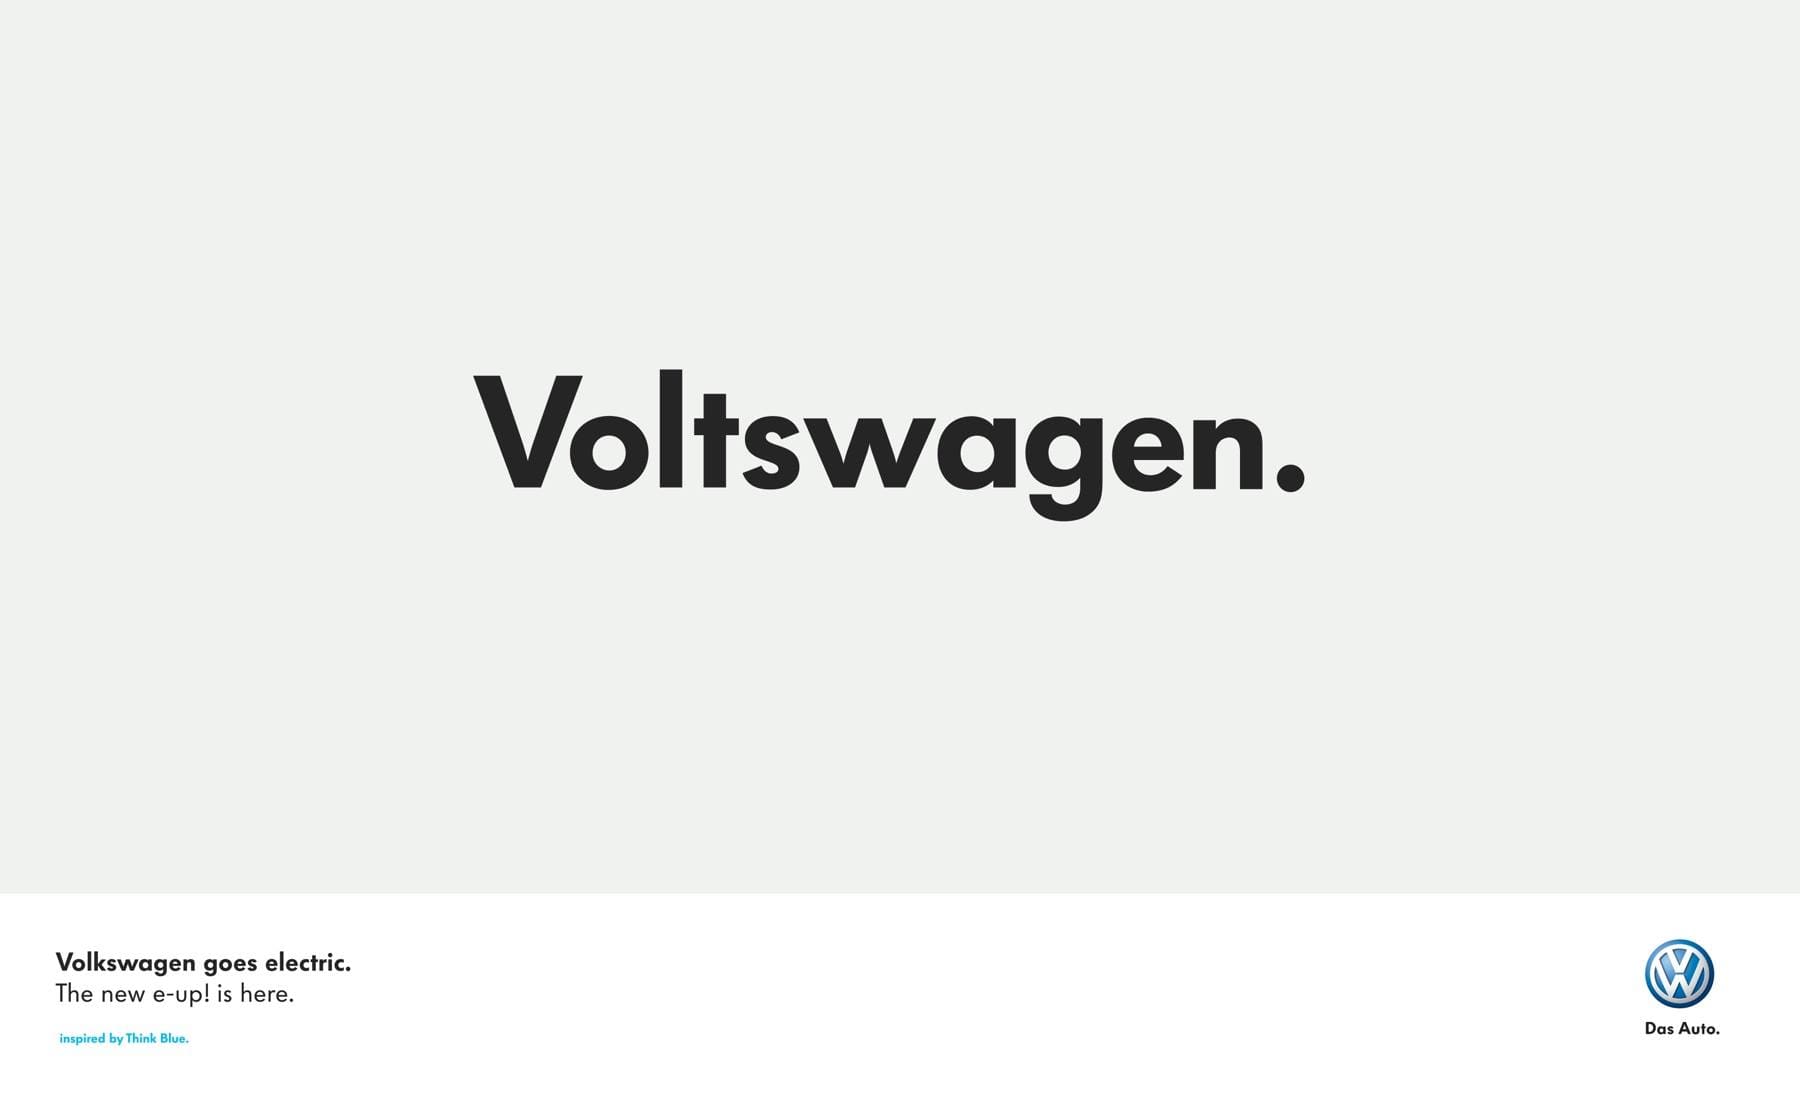 Volkswagen hace un juego de palabras para su vehículo eléctrico